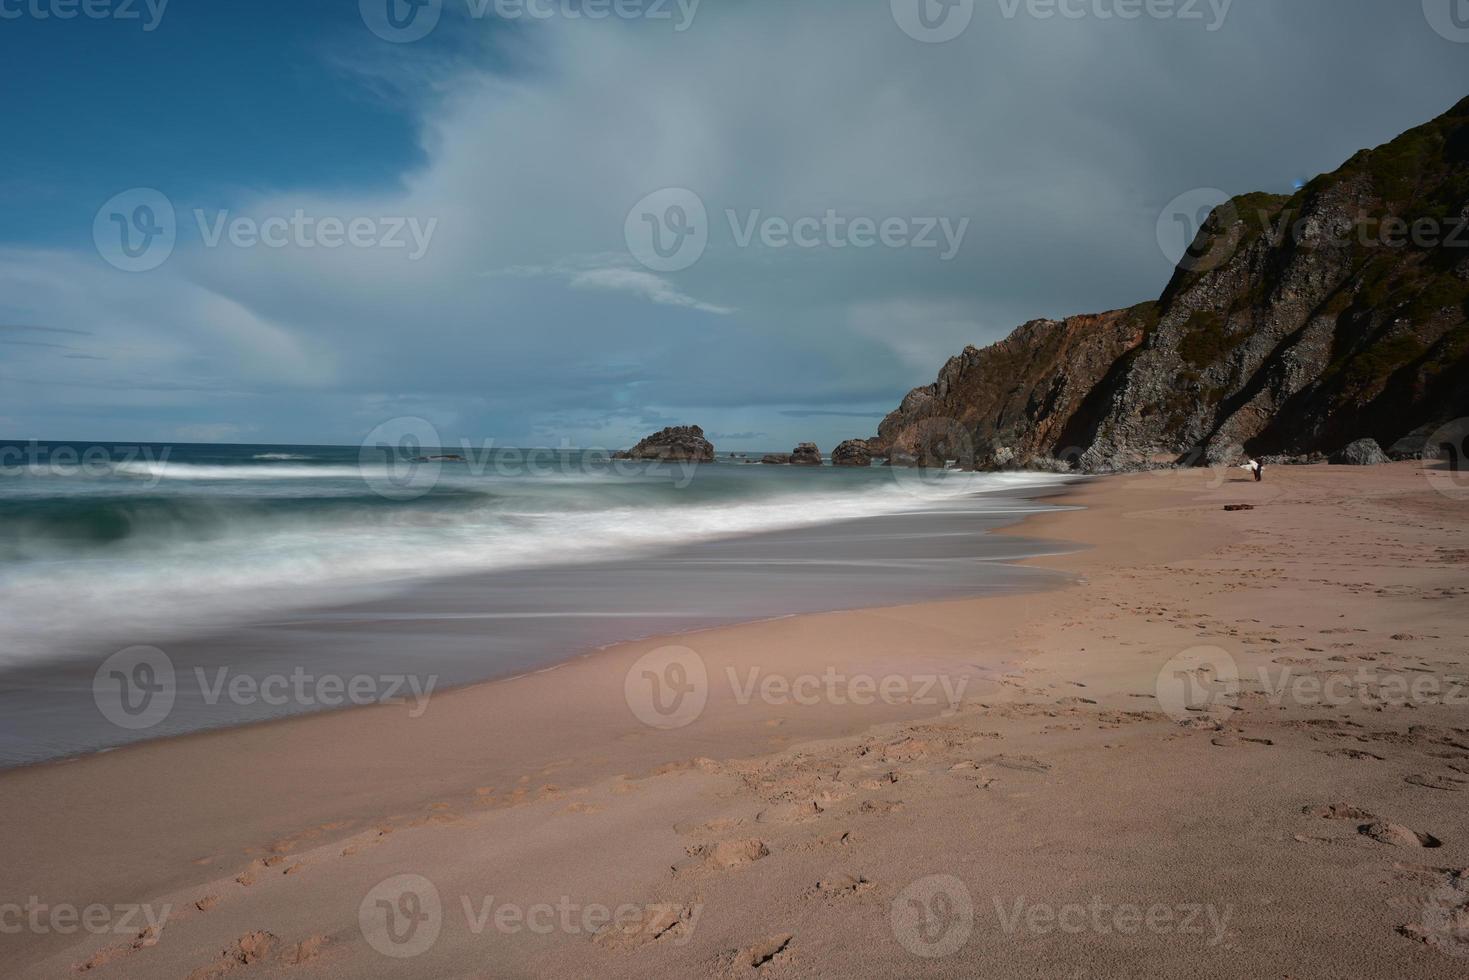 praia da adraga est une plage de l'atlantique nord au portugal, près de la ville d'almocageme, sintra. photo